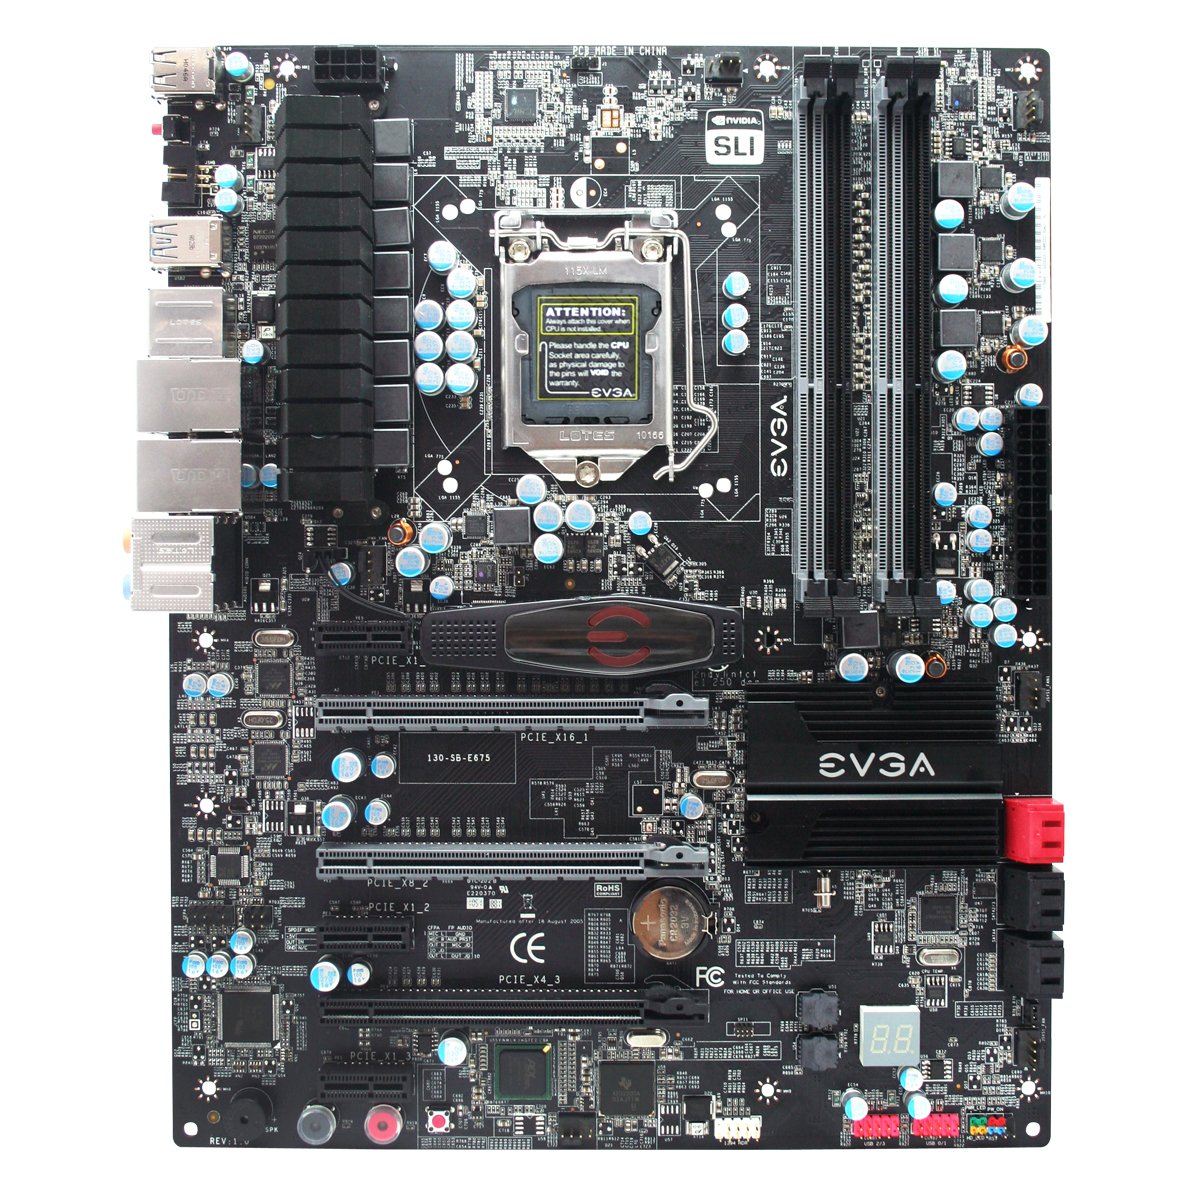 Immagine pubblicata in relazione al seguente contenuto: EVGA annuncia la motherboard P67 SLI per cpu Intel Sandy Bridge | Nome immagine: news14522_2.jpg